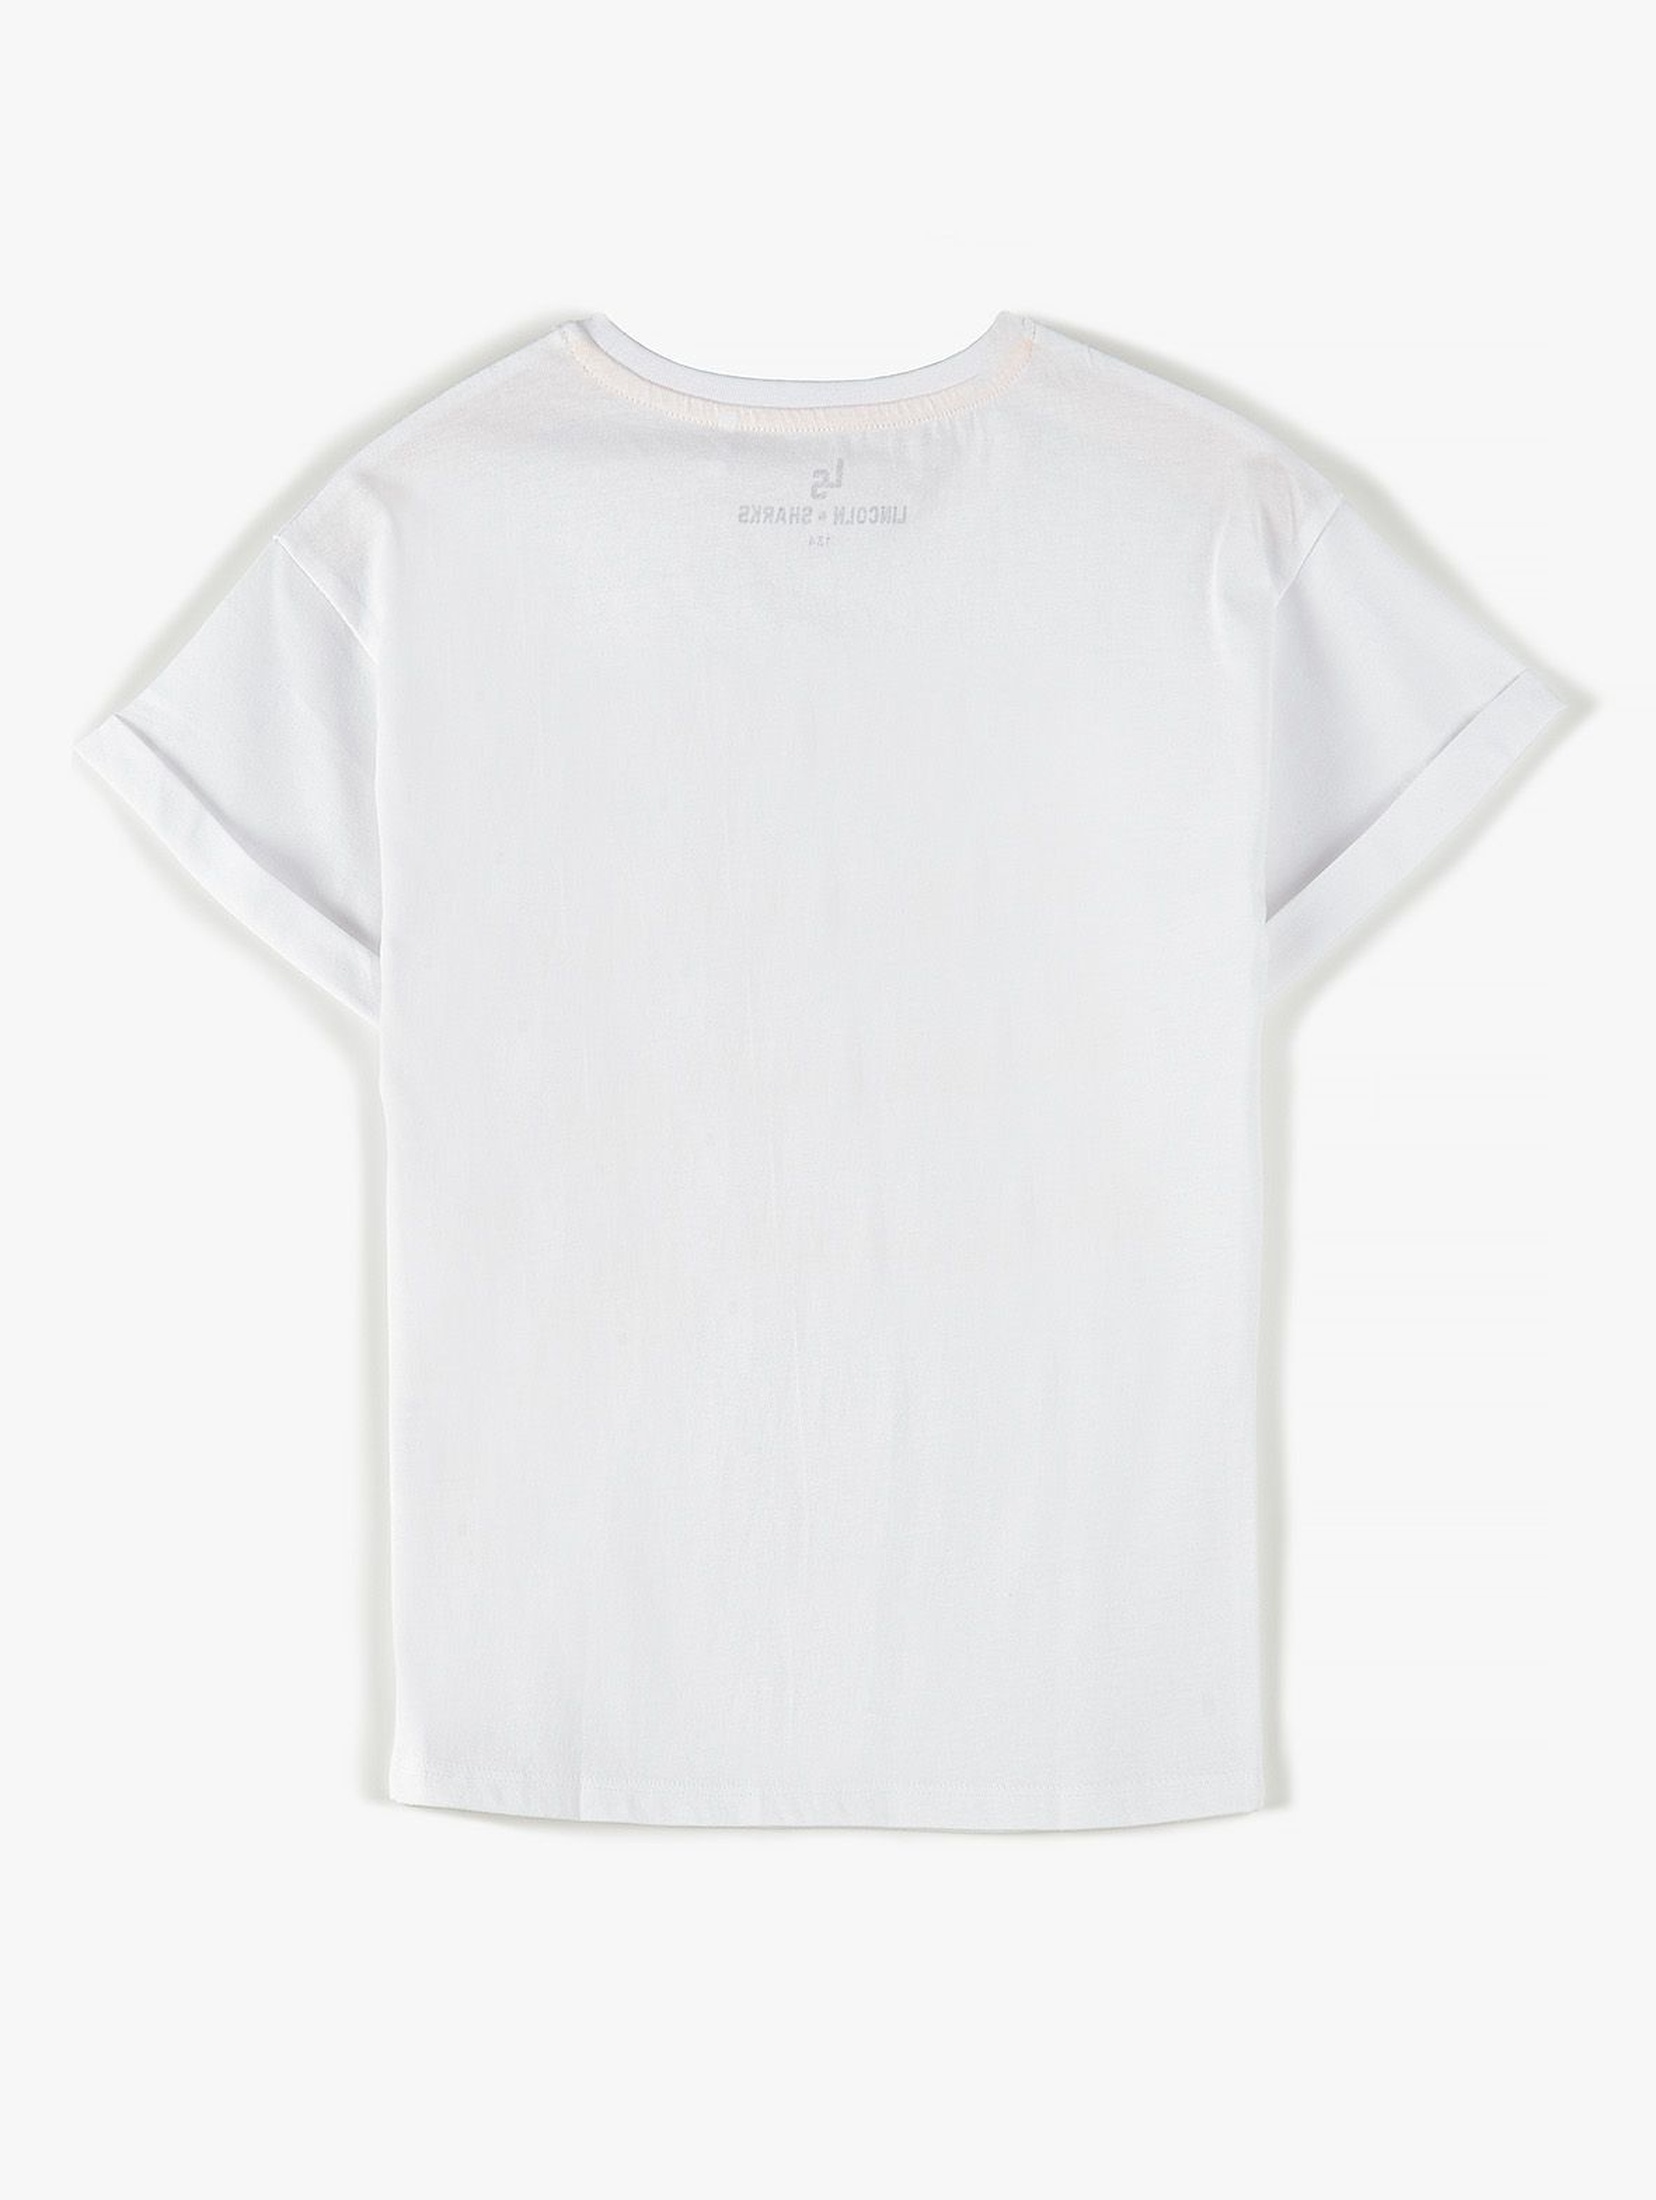 Bawełniany T- shirt dziewczęcy biały z nadrukiem z przodu- 100% bawełna